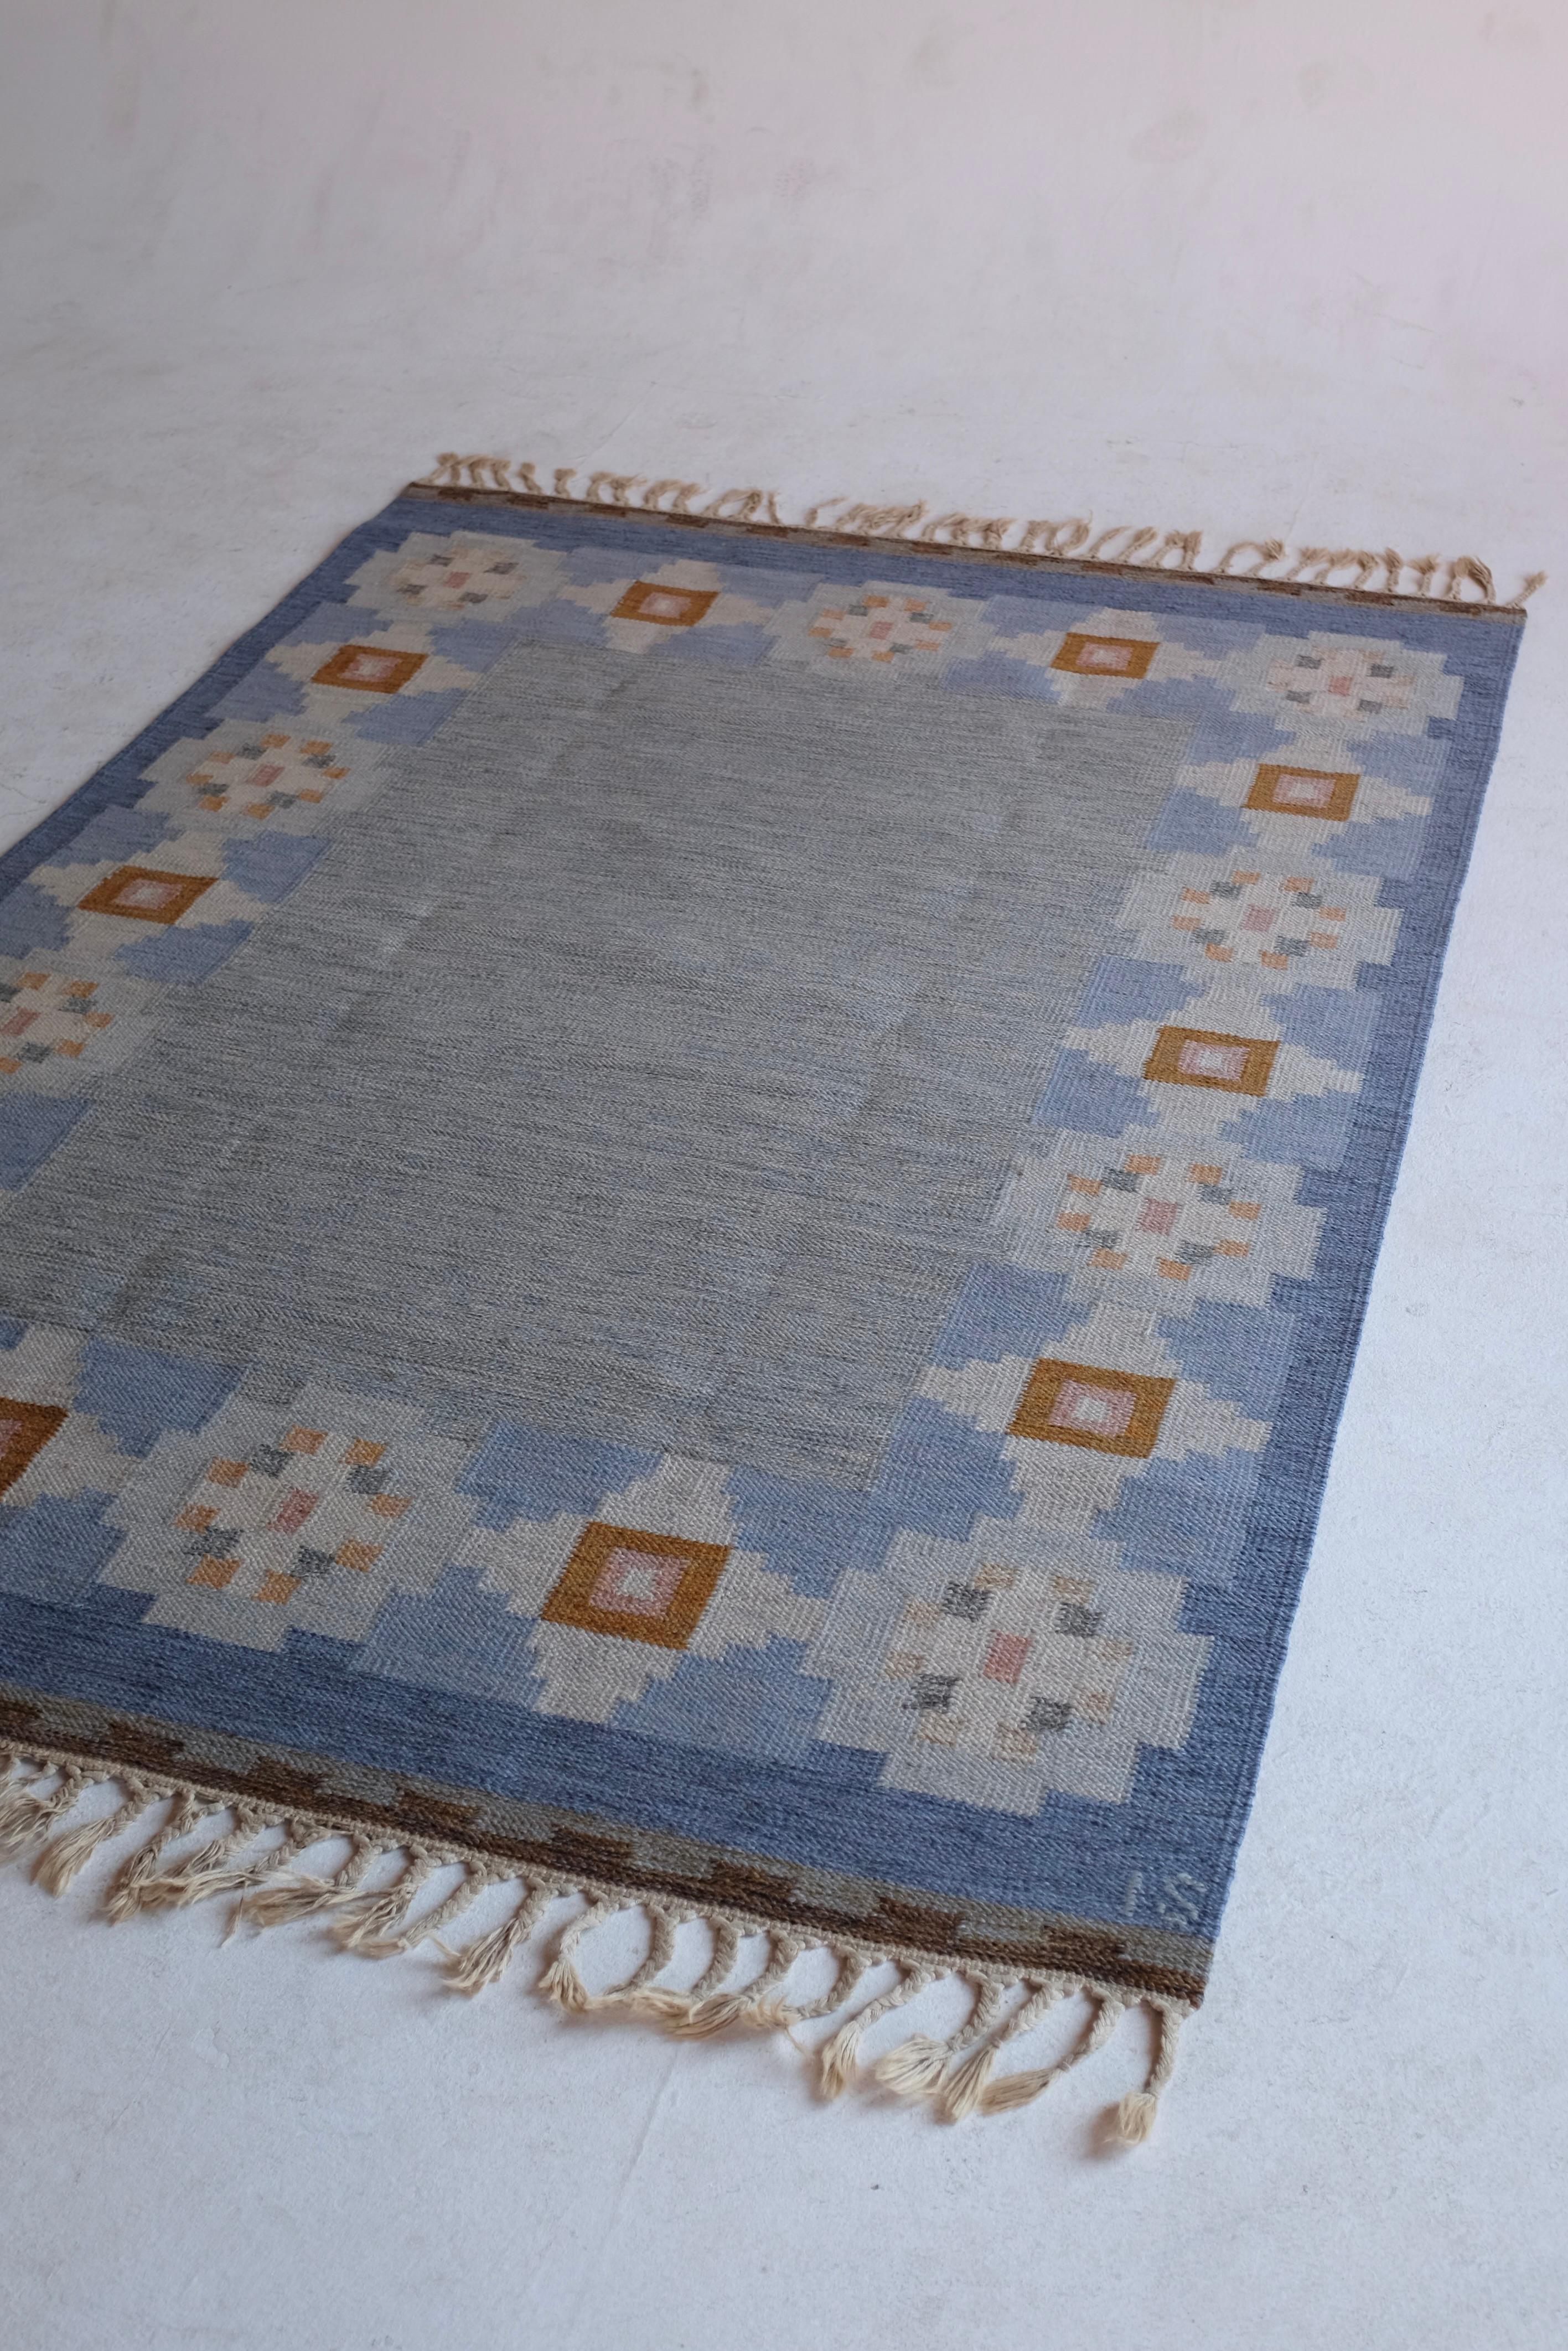 Vintage Mid-Century-Teppich der schwedischen Textildesignerin Ingegerd Silow. Ein blauer Grundton wird von einem geometrischen Blumenmuster entlang der Ränder in Braun-, Weiß- und Rosatönen begleitet. In einem guten Zustand mit einigen Verschleiß an